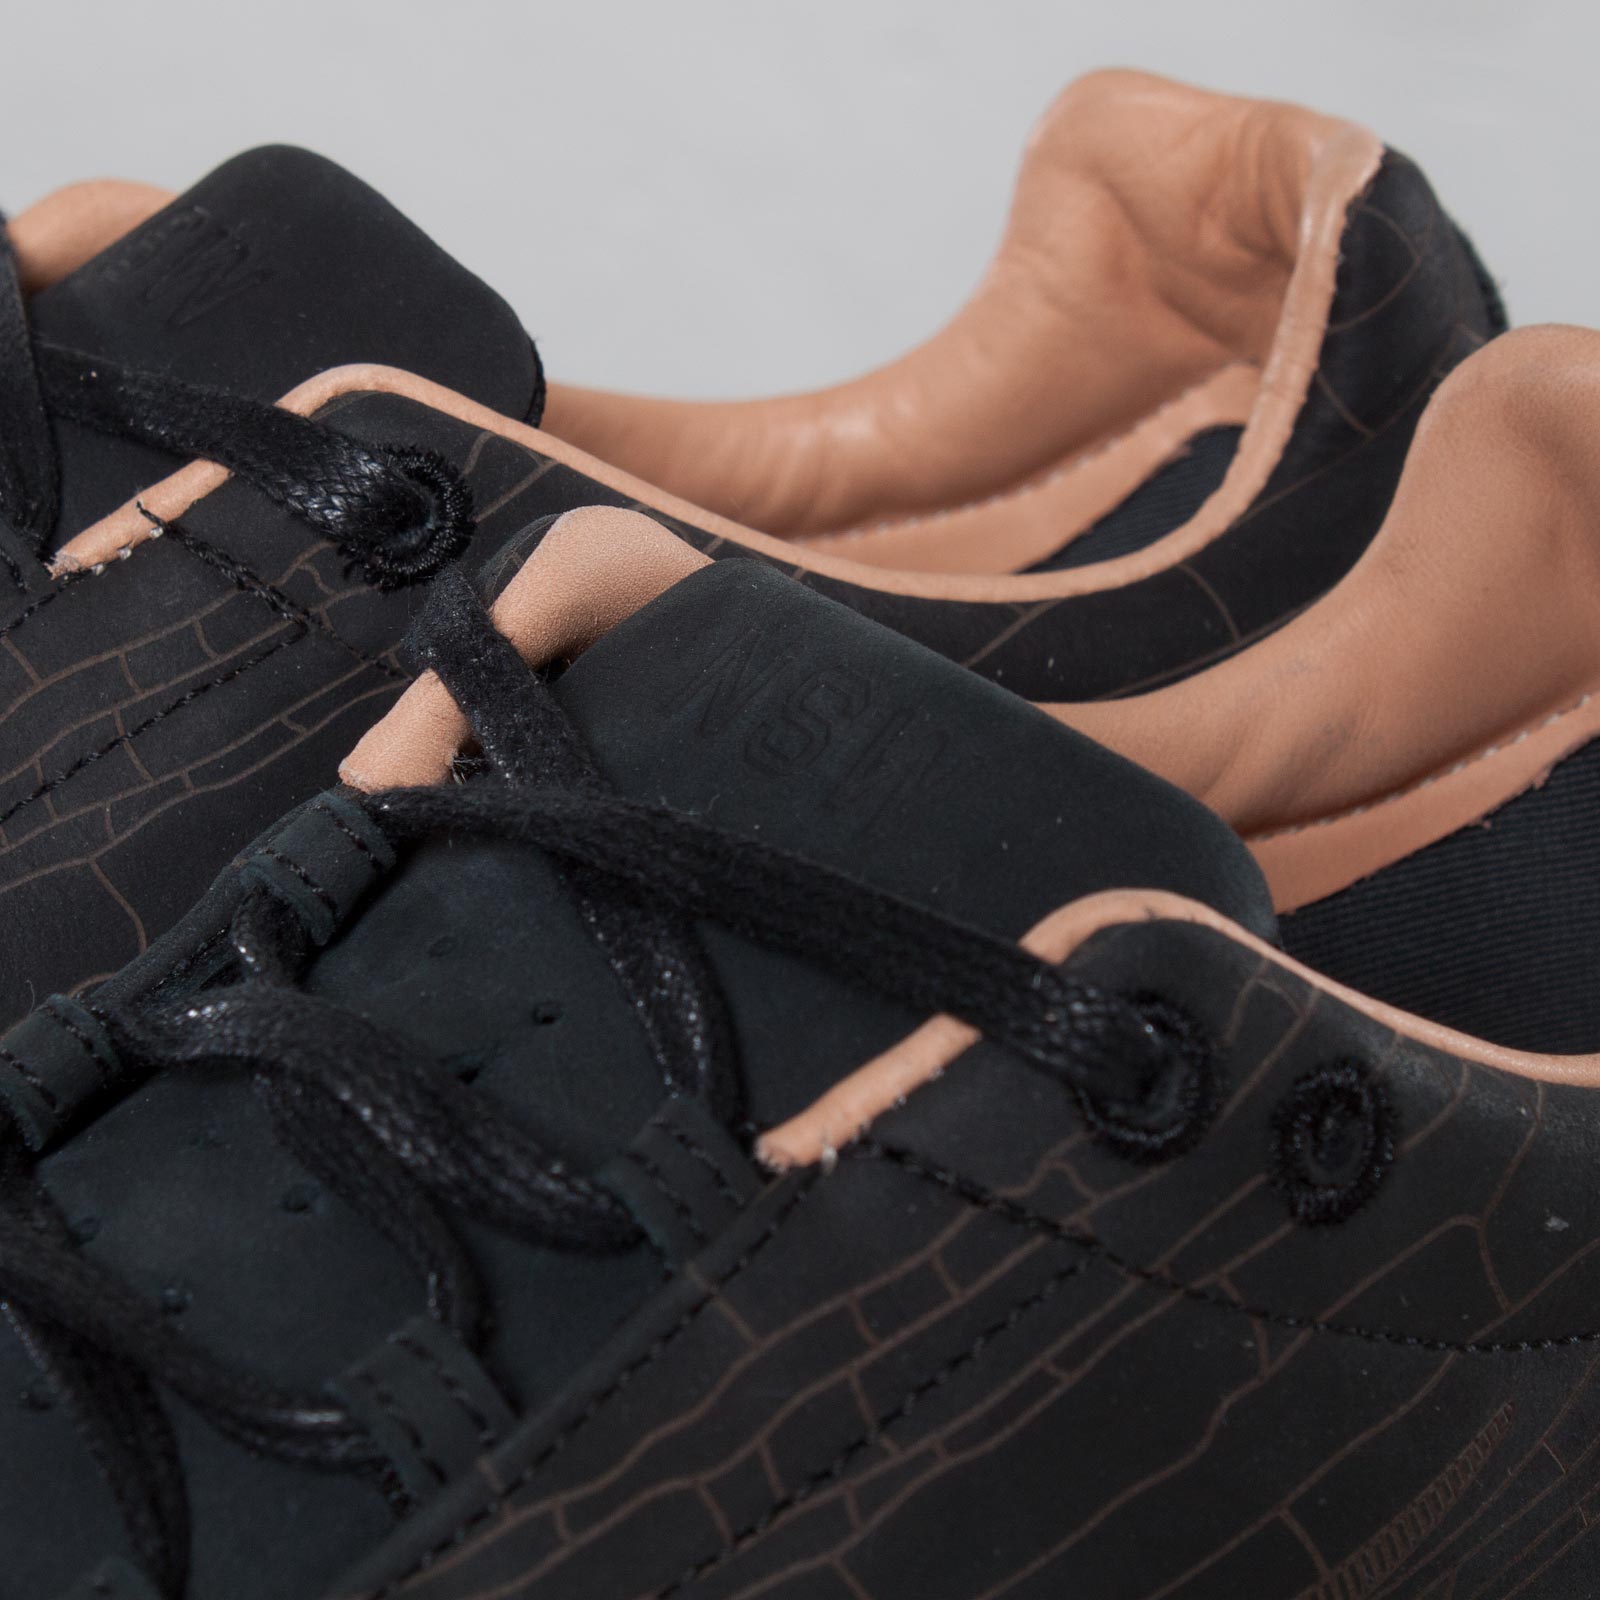 Release Reminder: Nike Mayfly Premium 'Black'